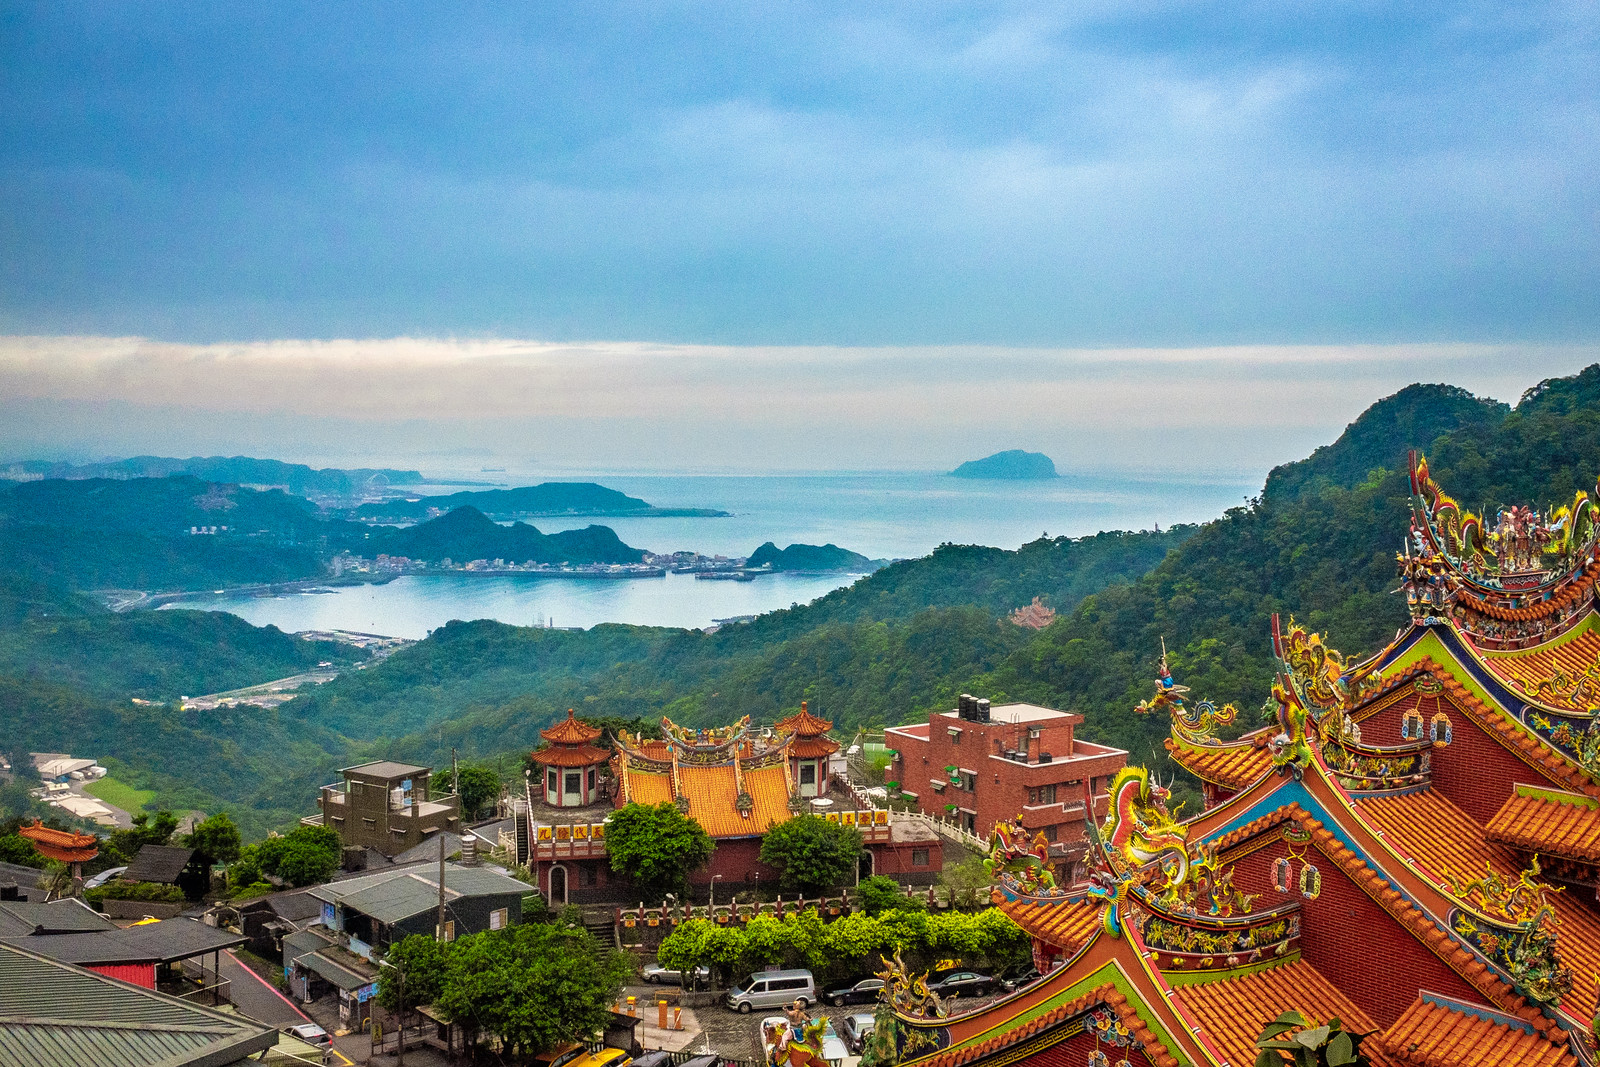 Vistas de la costa norte, uno de los principales puntos de interés del turismo en Taiwán